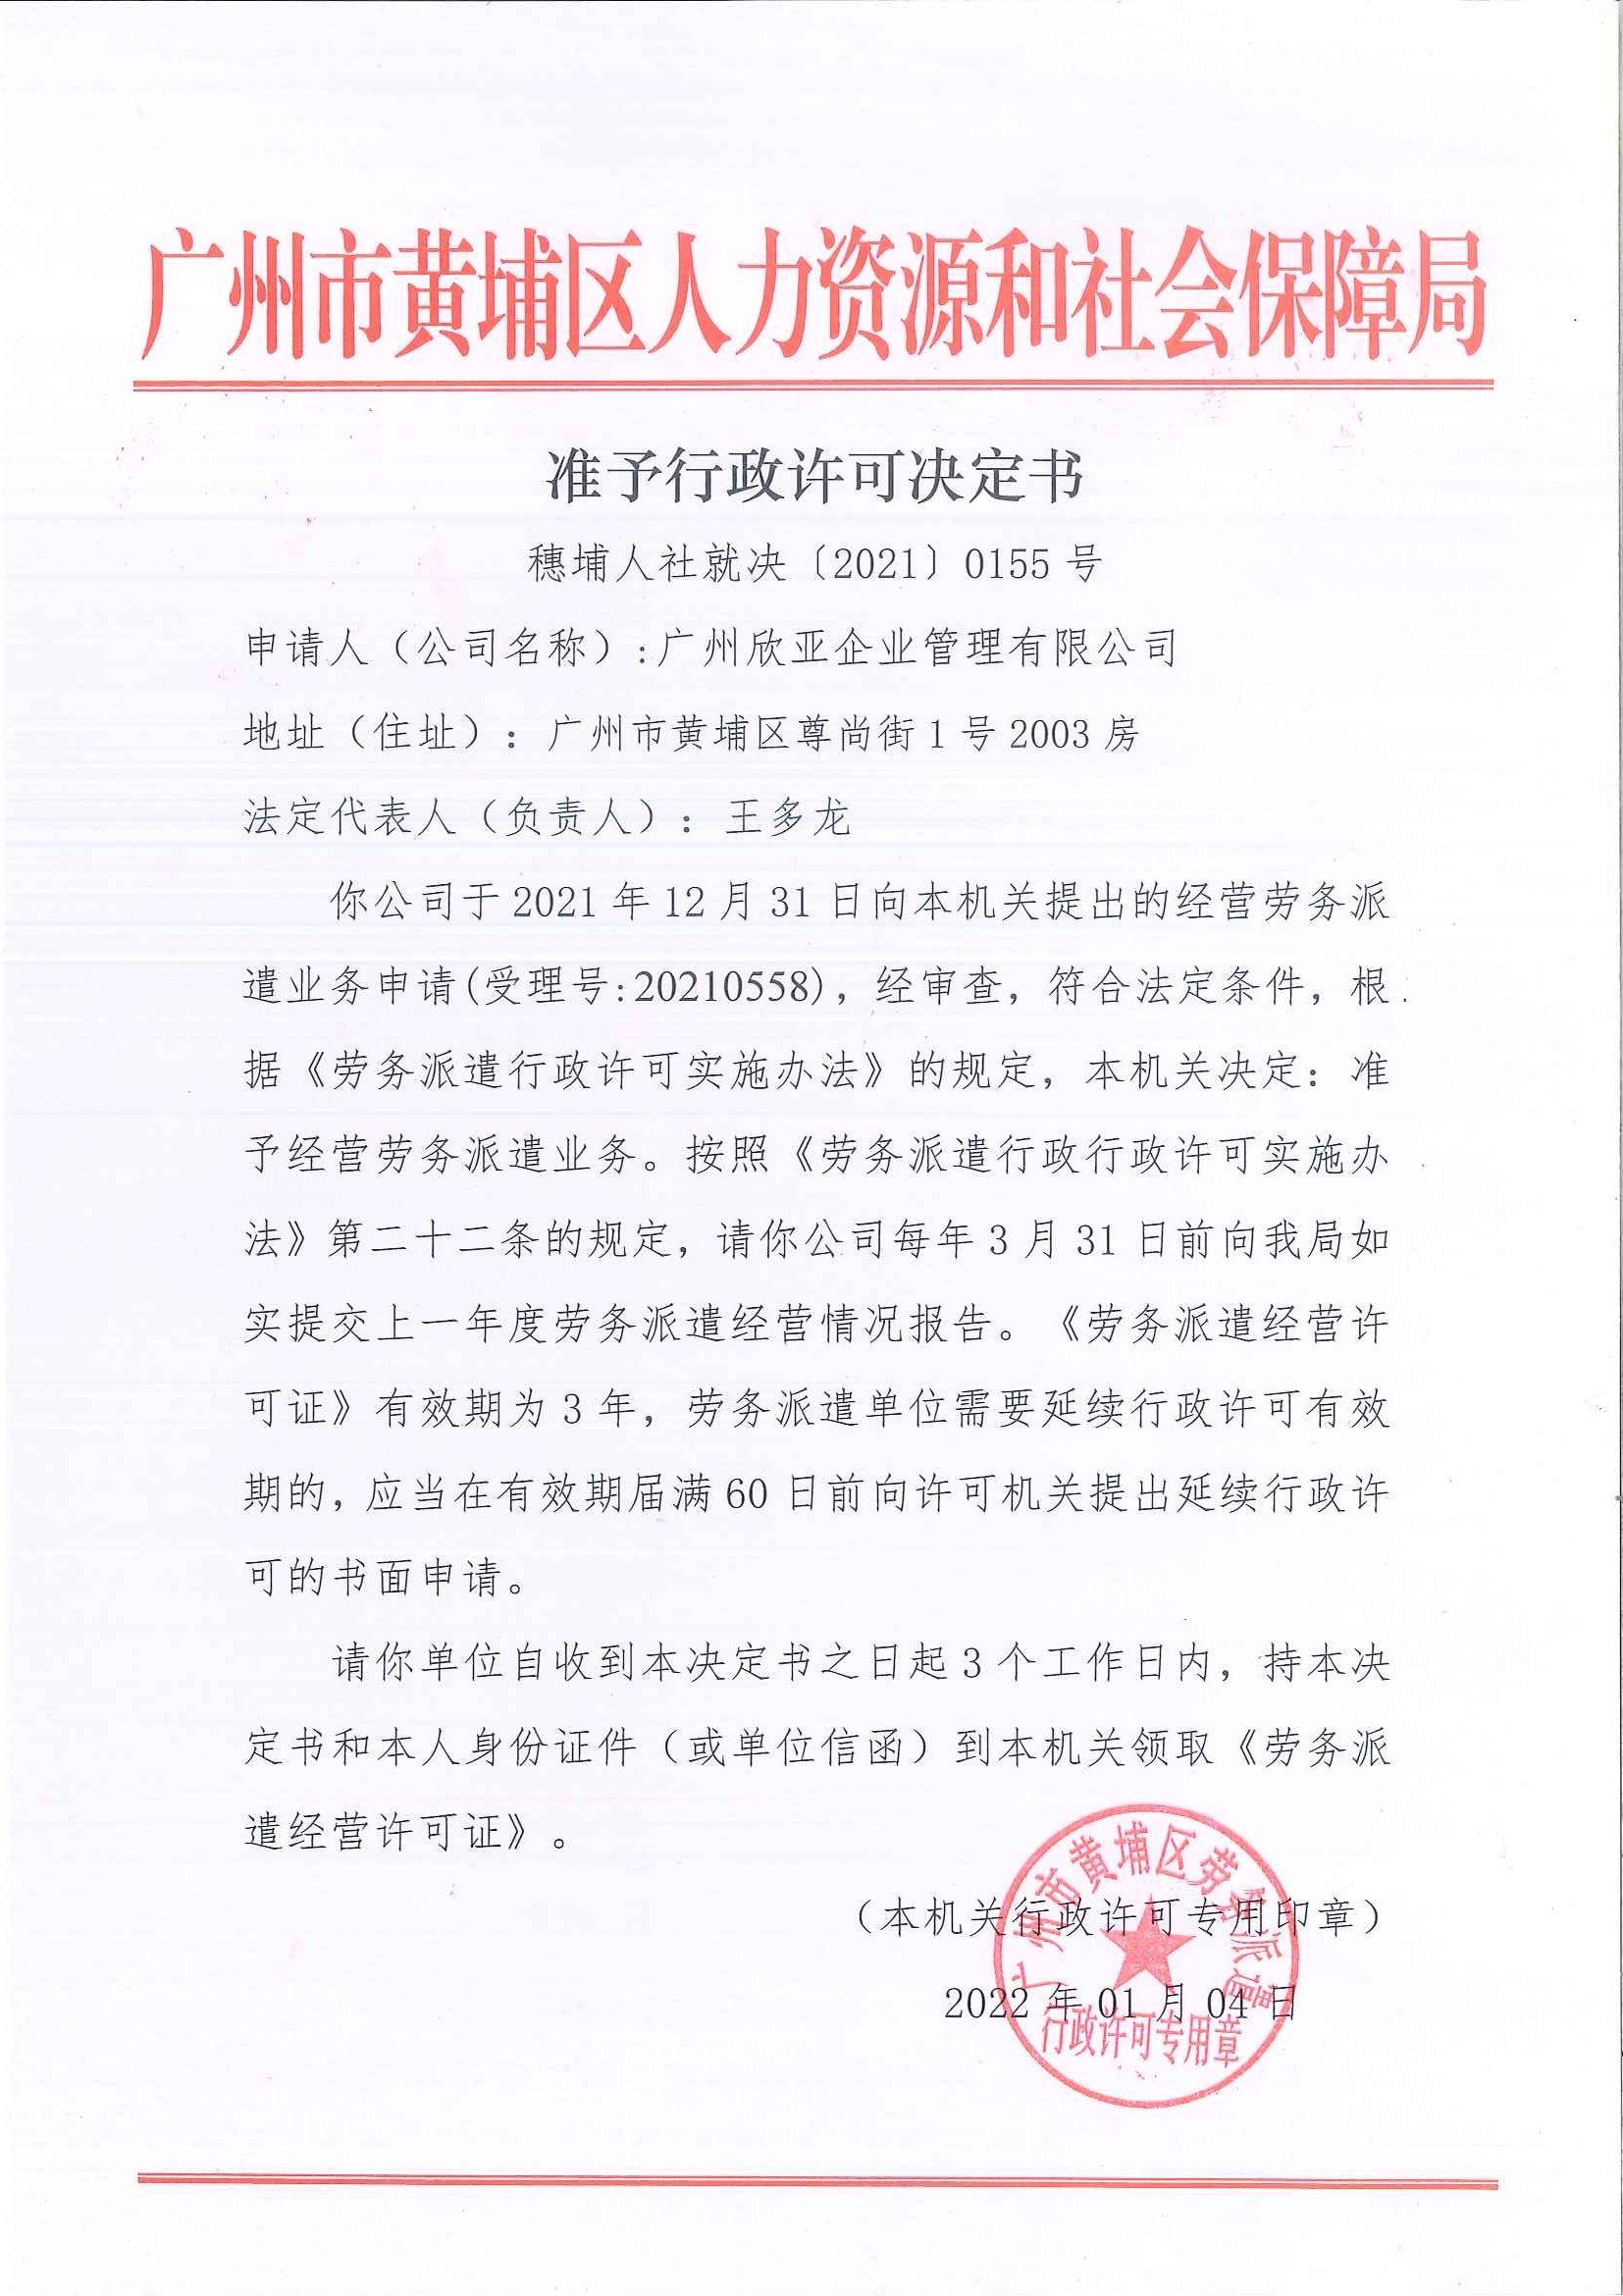 欣亚企业准予行政许可决定书（202201逾期延续再申请）.jpg